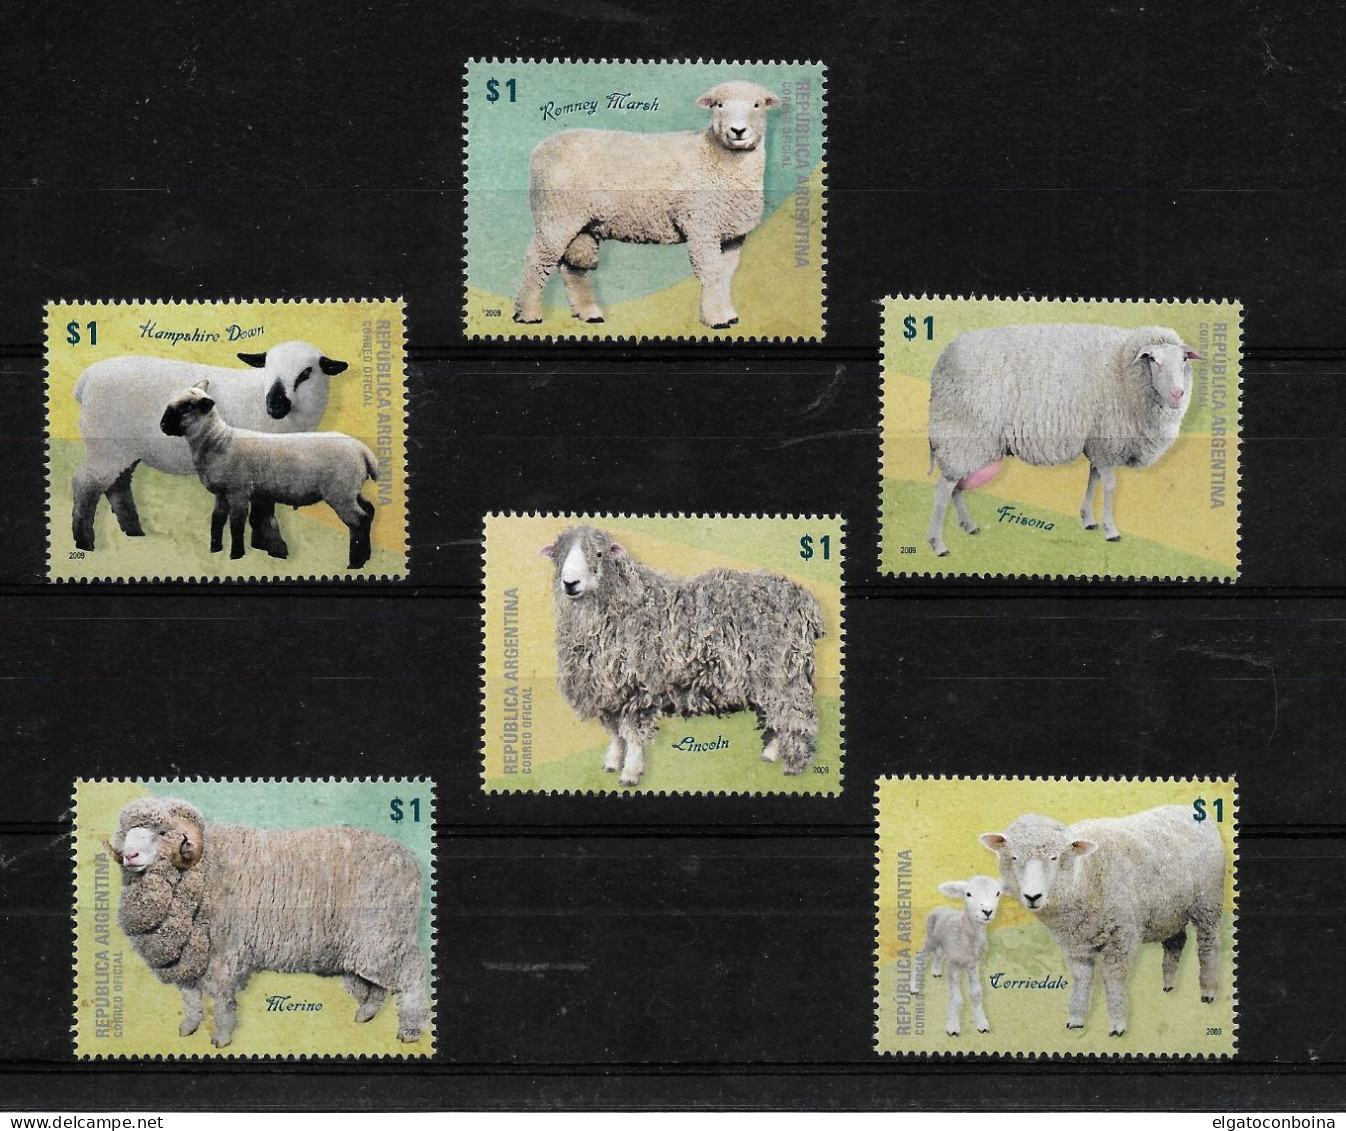 ARGENTINA 2009 SHEEP BREEDS SHEEPS FAUNA MINIATURE SHEET SET MINT NEVER HINGED - Oblitérés